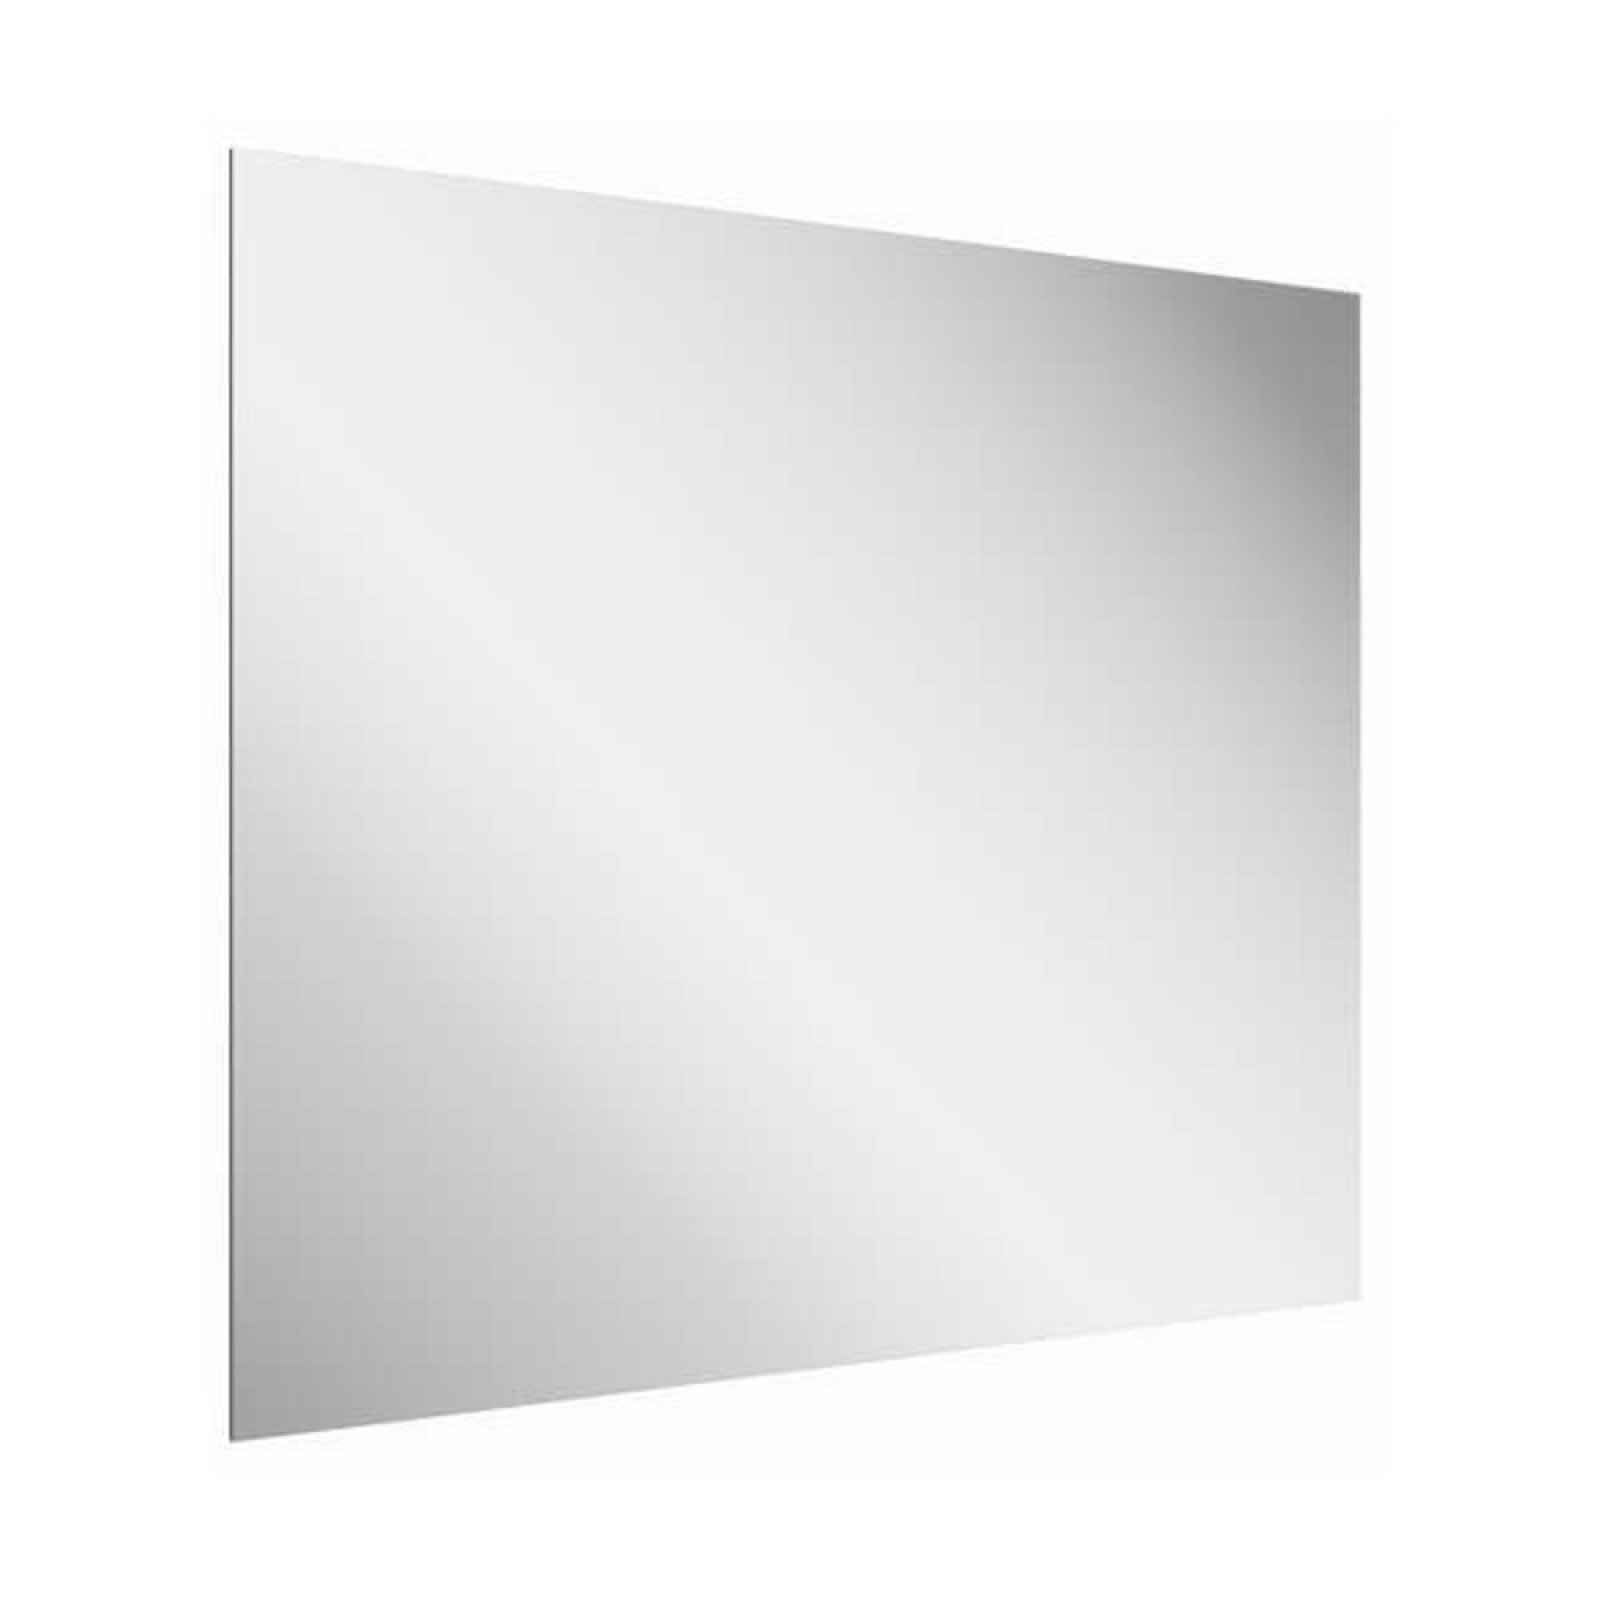 Zrcadlo bez vypínače Ravak Oblong 60x70 cm transparent X000001562